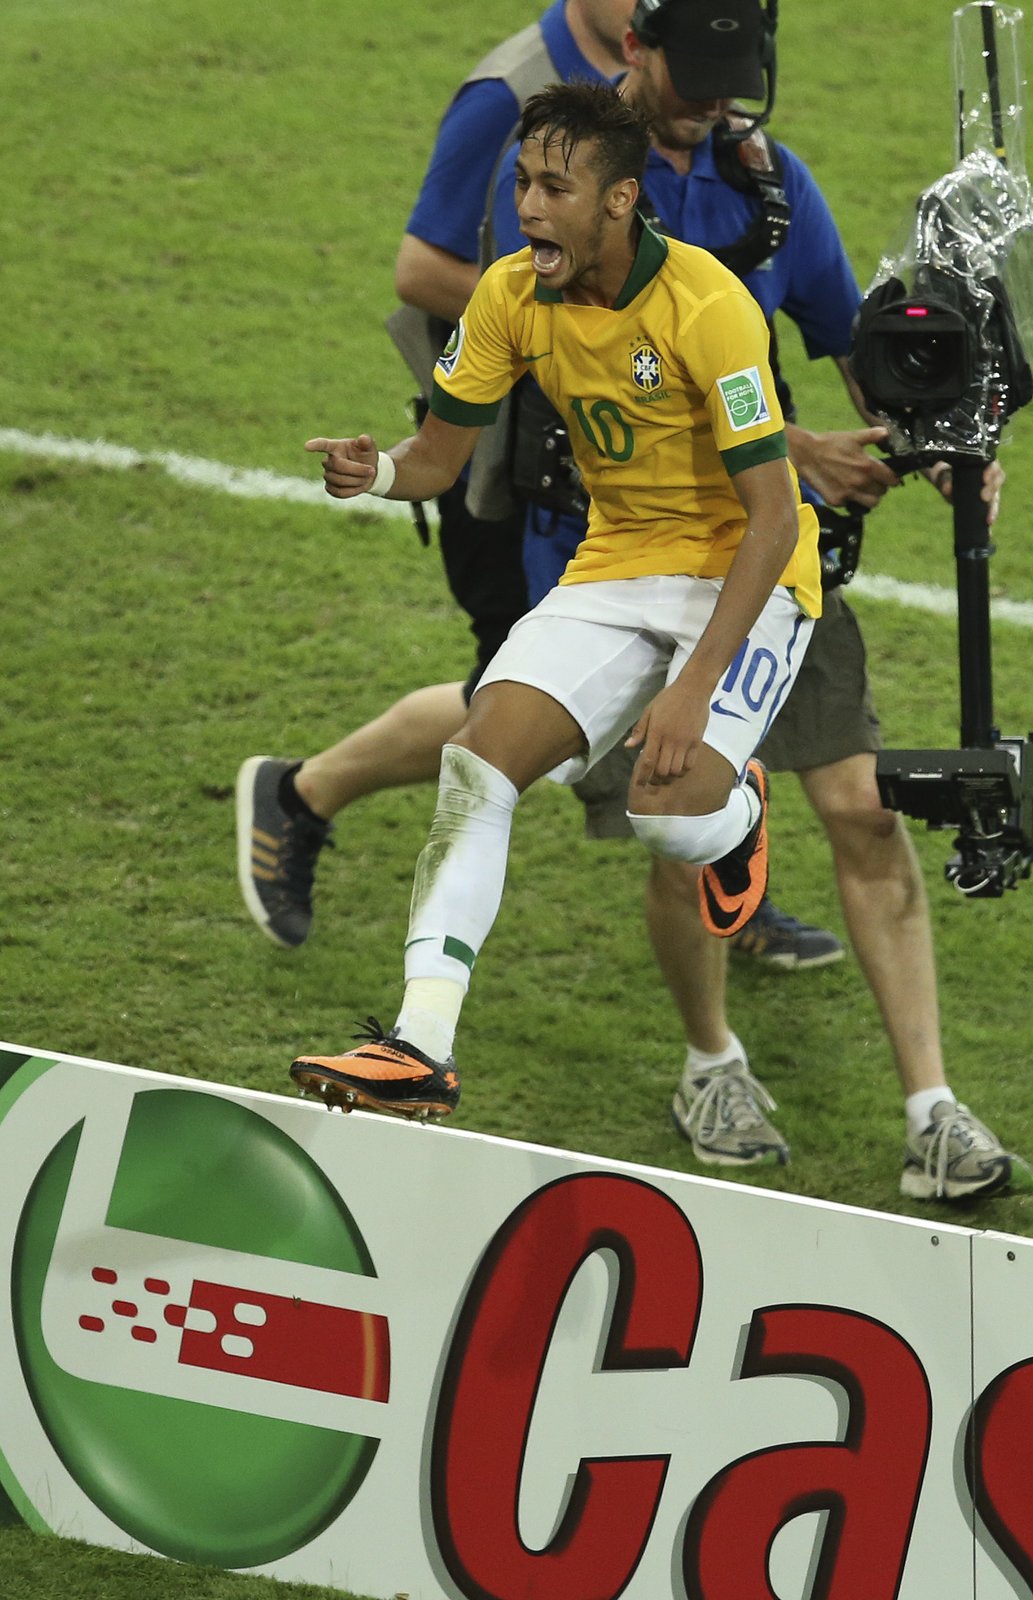 Hlavní hrdina brazilských fanoušků. Neymar se na Poháru FIFA trefil čtyřikrát.